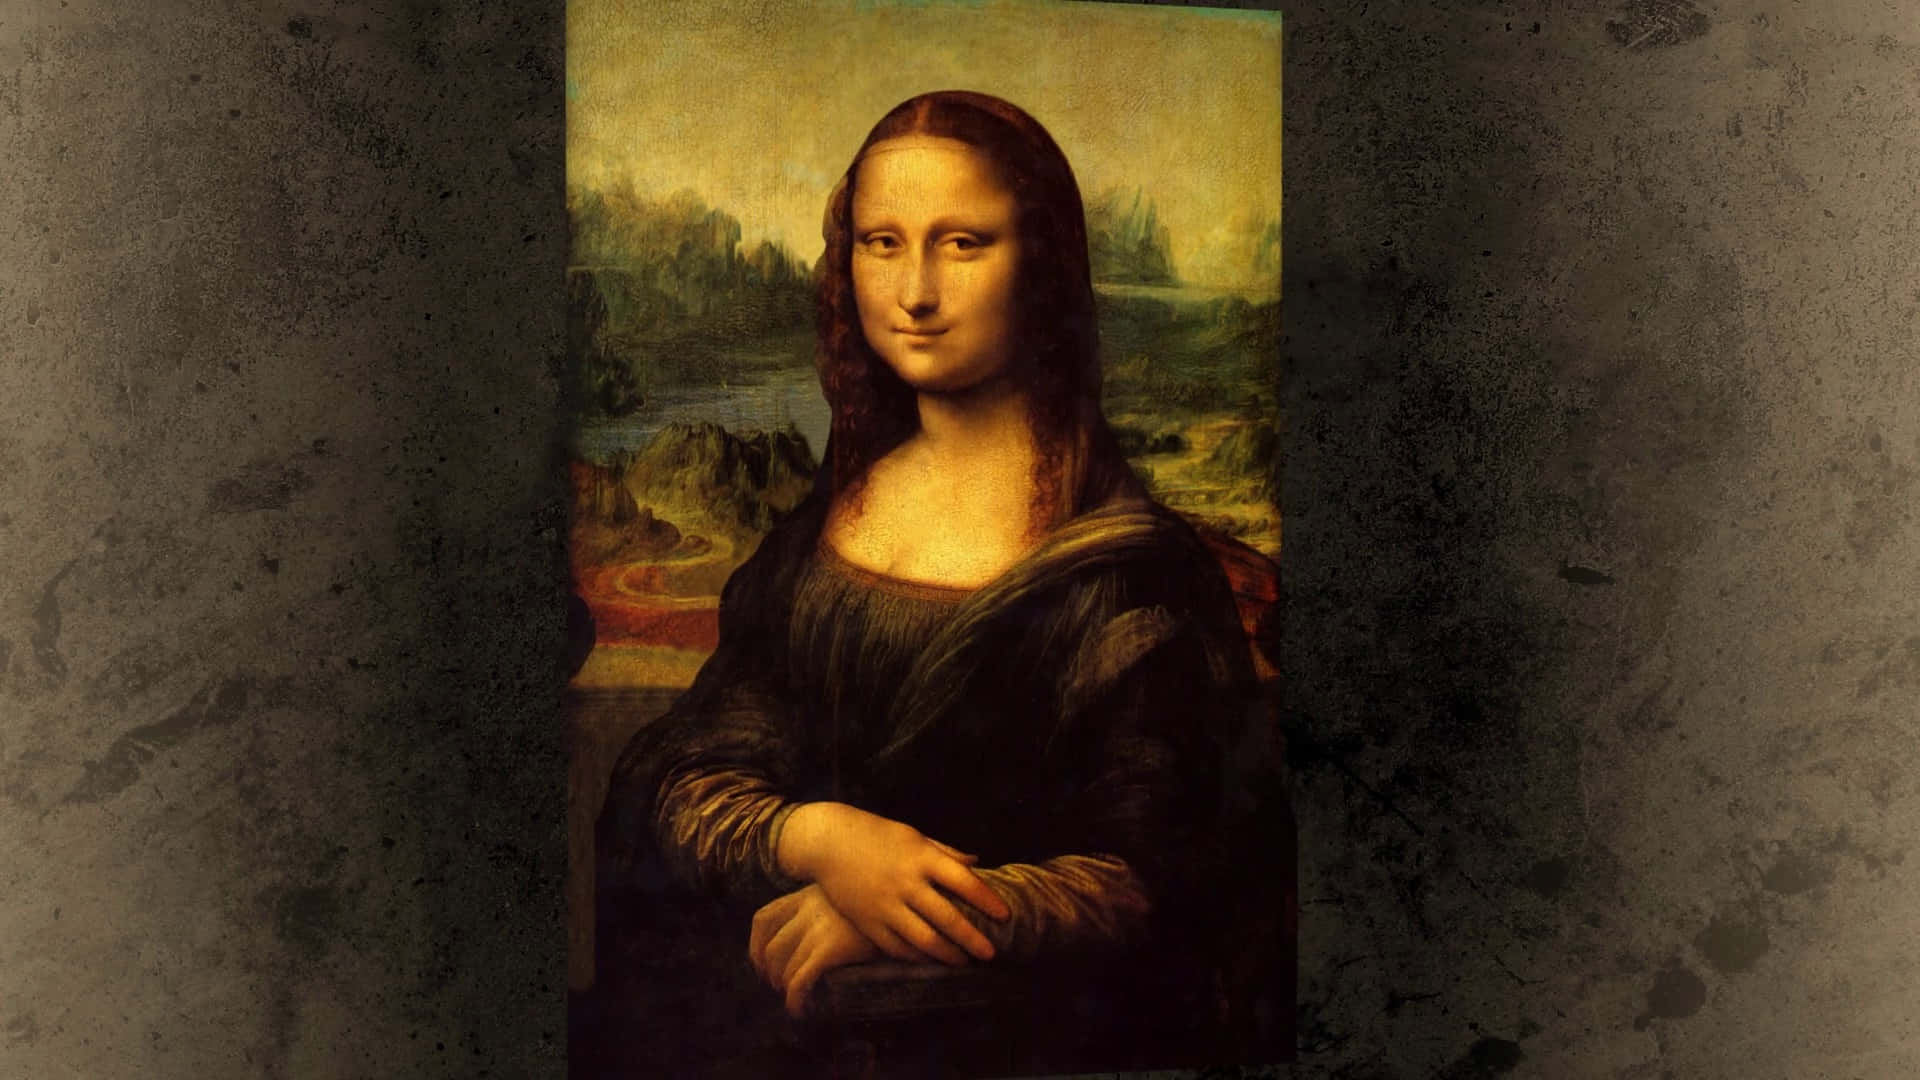 Mona Lisa - The Iconic Renaissance Portrait